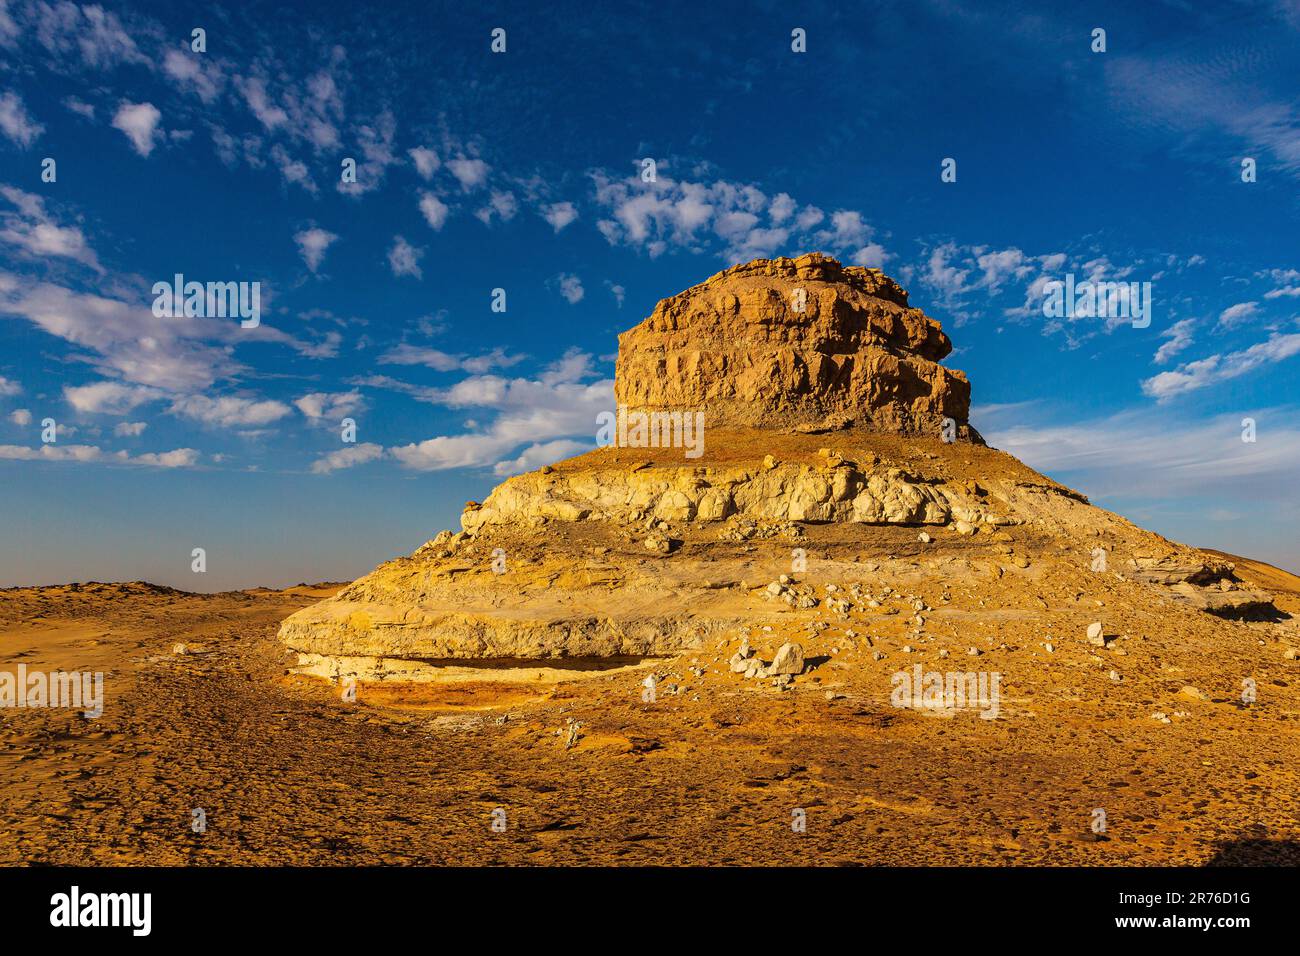 jebel Peak ist ein majestätischer, einsamer Berg aus zerfallenem Sandstein inmitten einer Dünenwüste im sudan Stockfoto